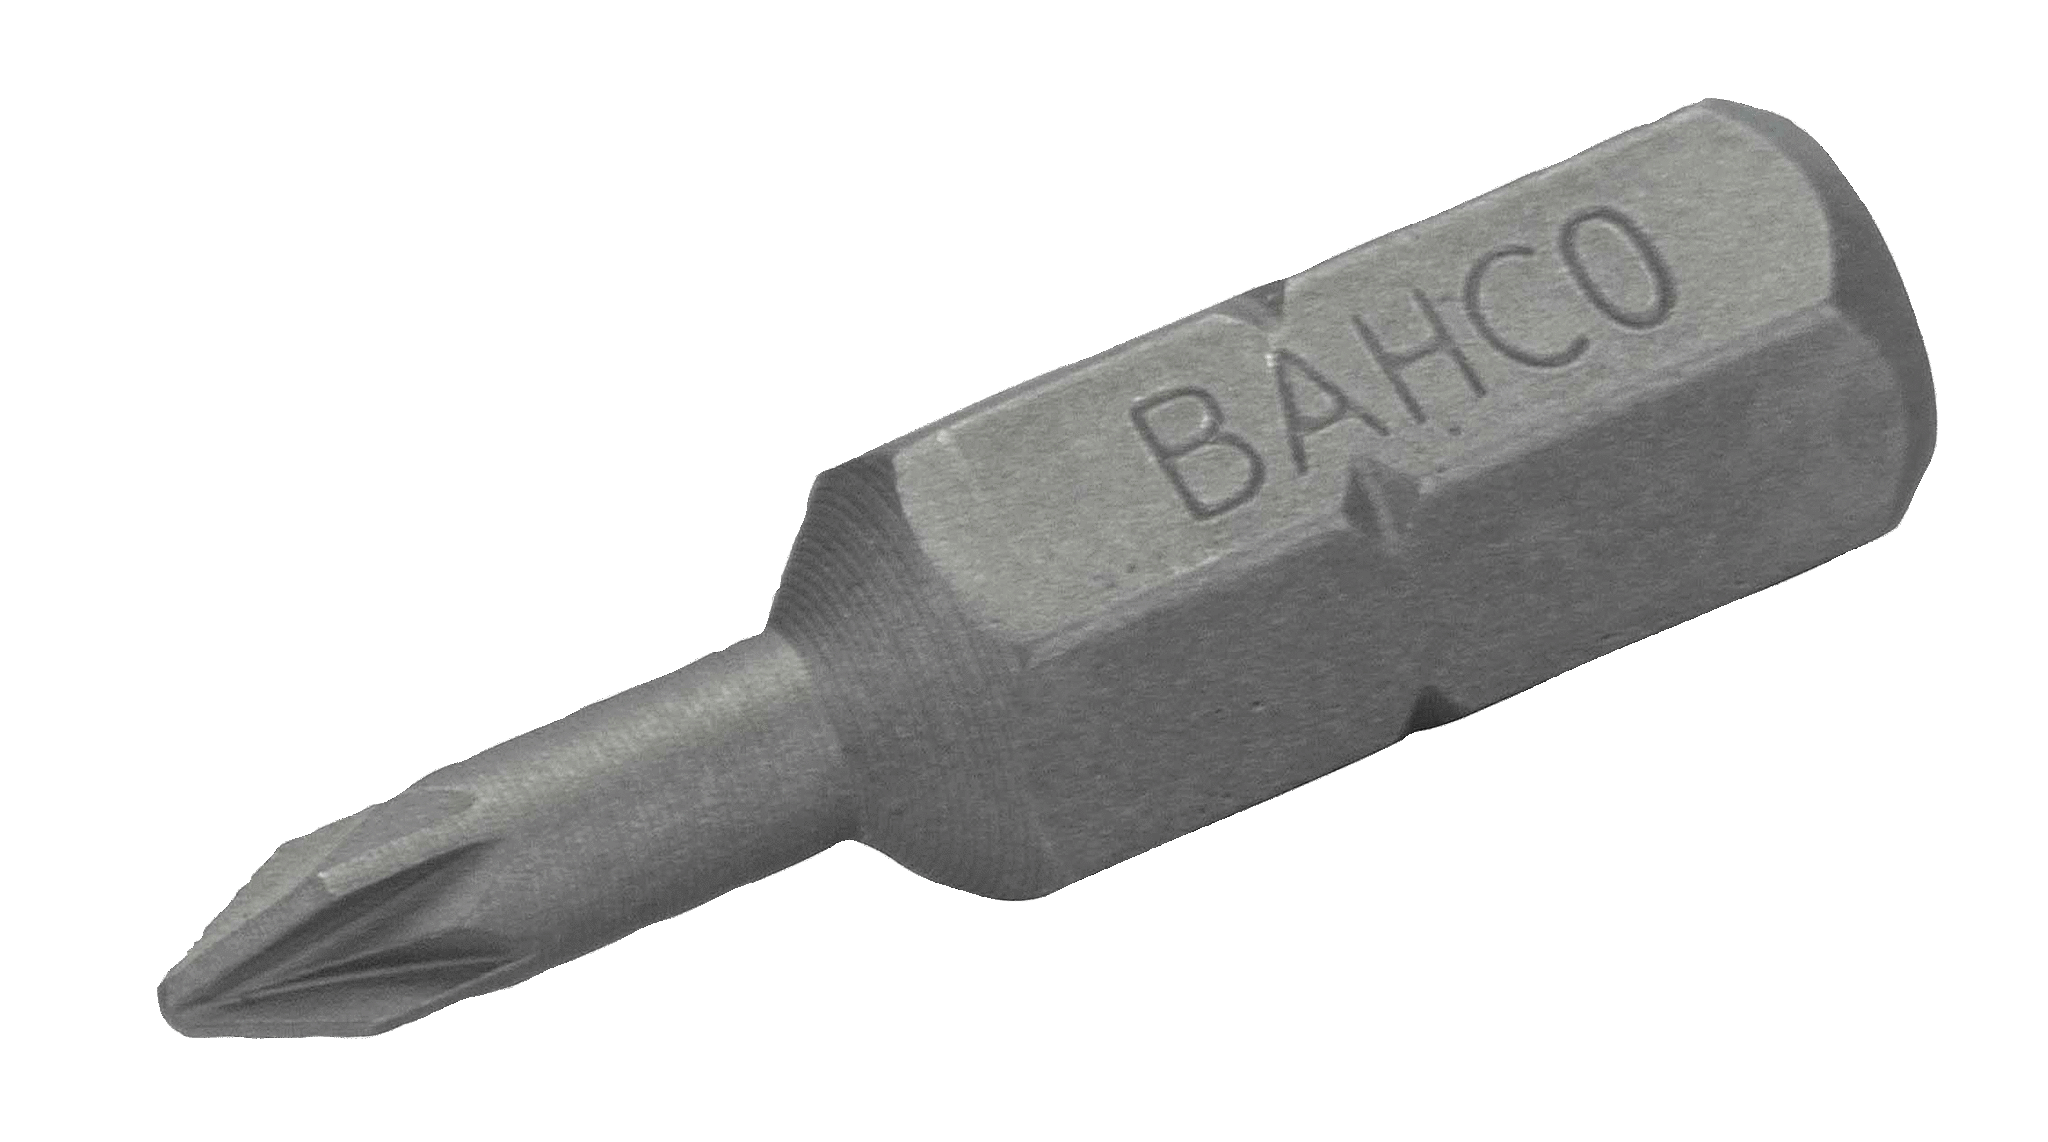 картинка Стандартные биты для отверток Pozidriv, 25 мм BAHCO 59S/PZ1-IP от магазина "Элит-инструмент"